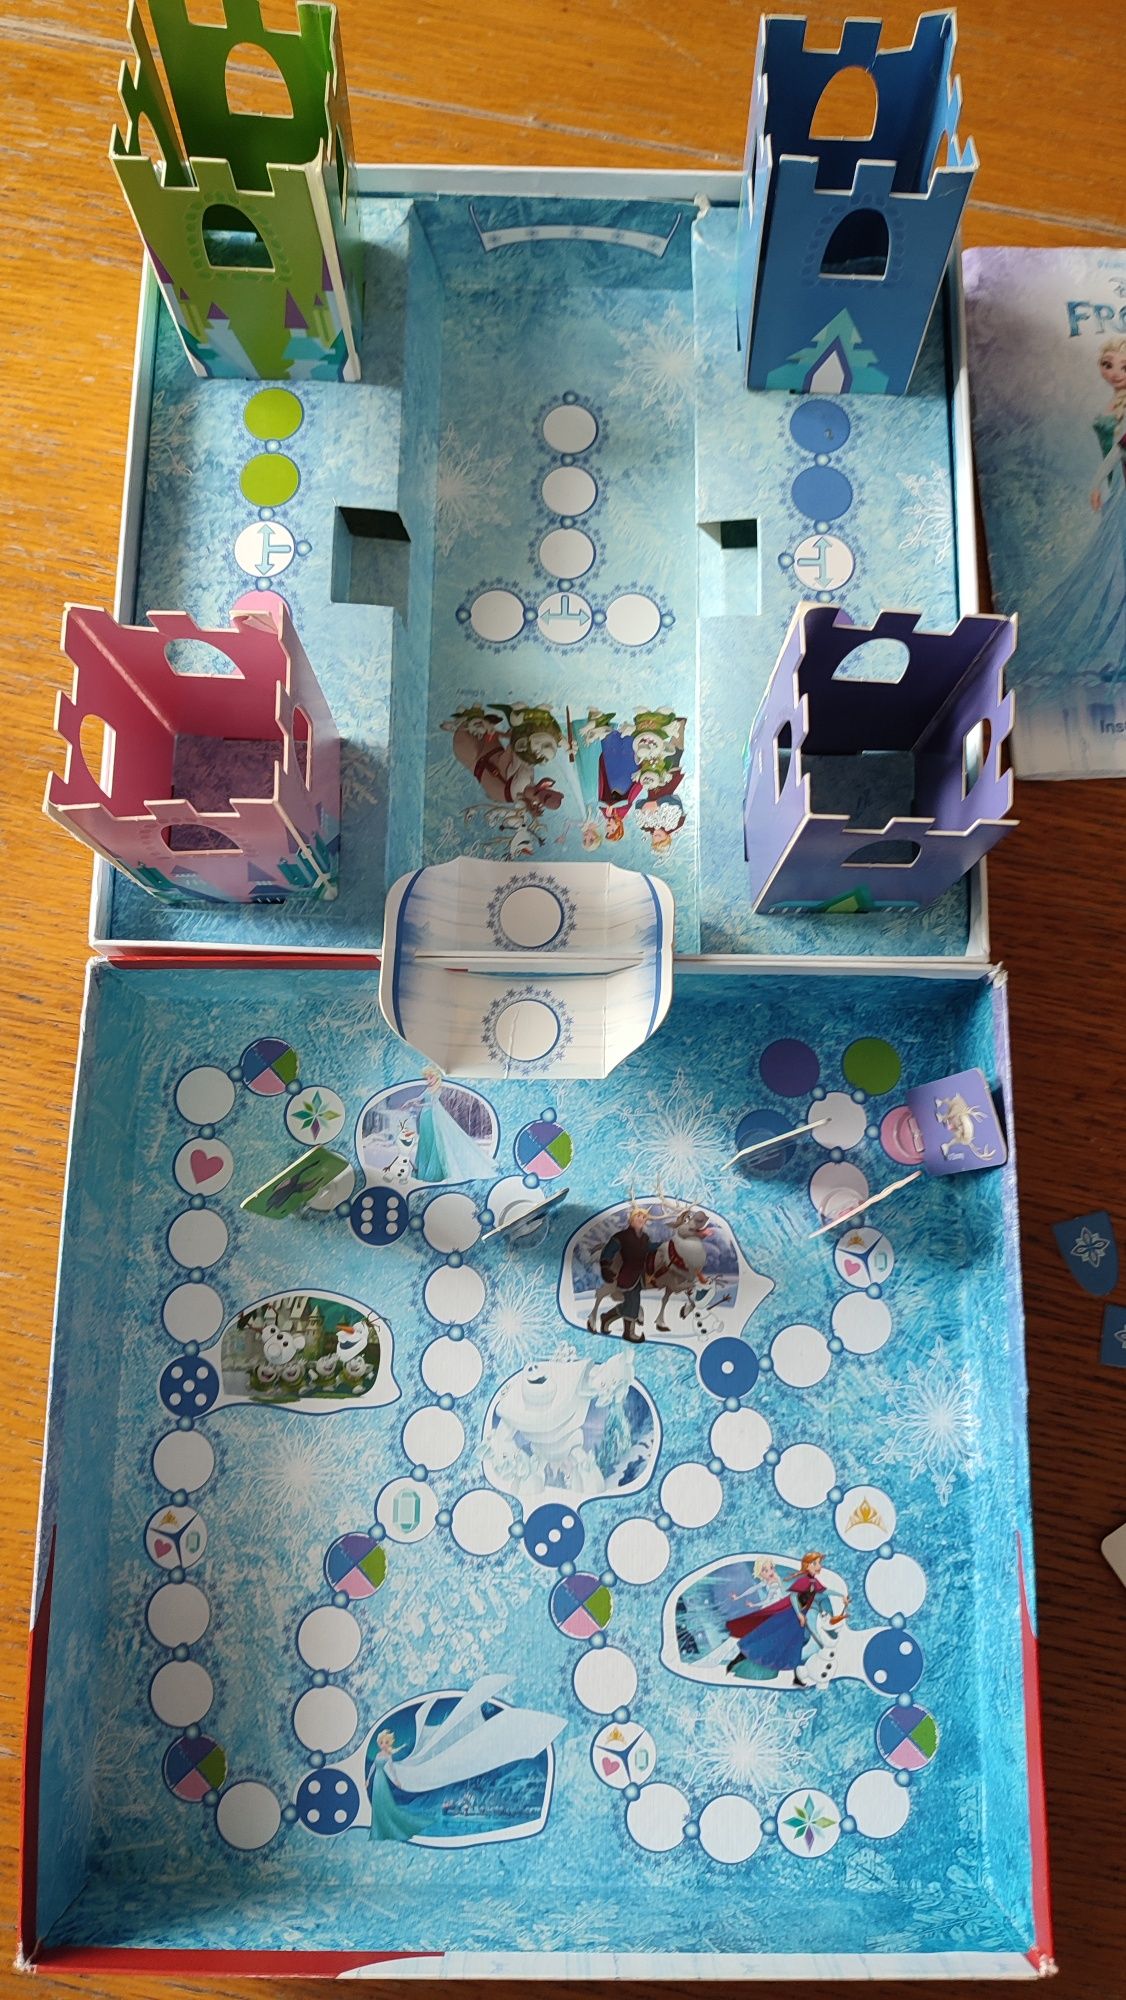 Gra przestrzenna 3D planszowa  W krainie lodu Elza